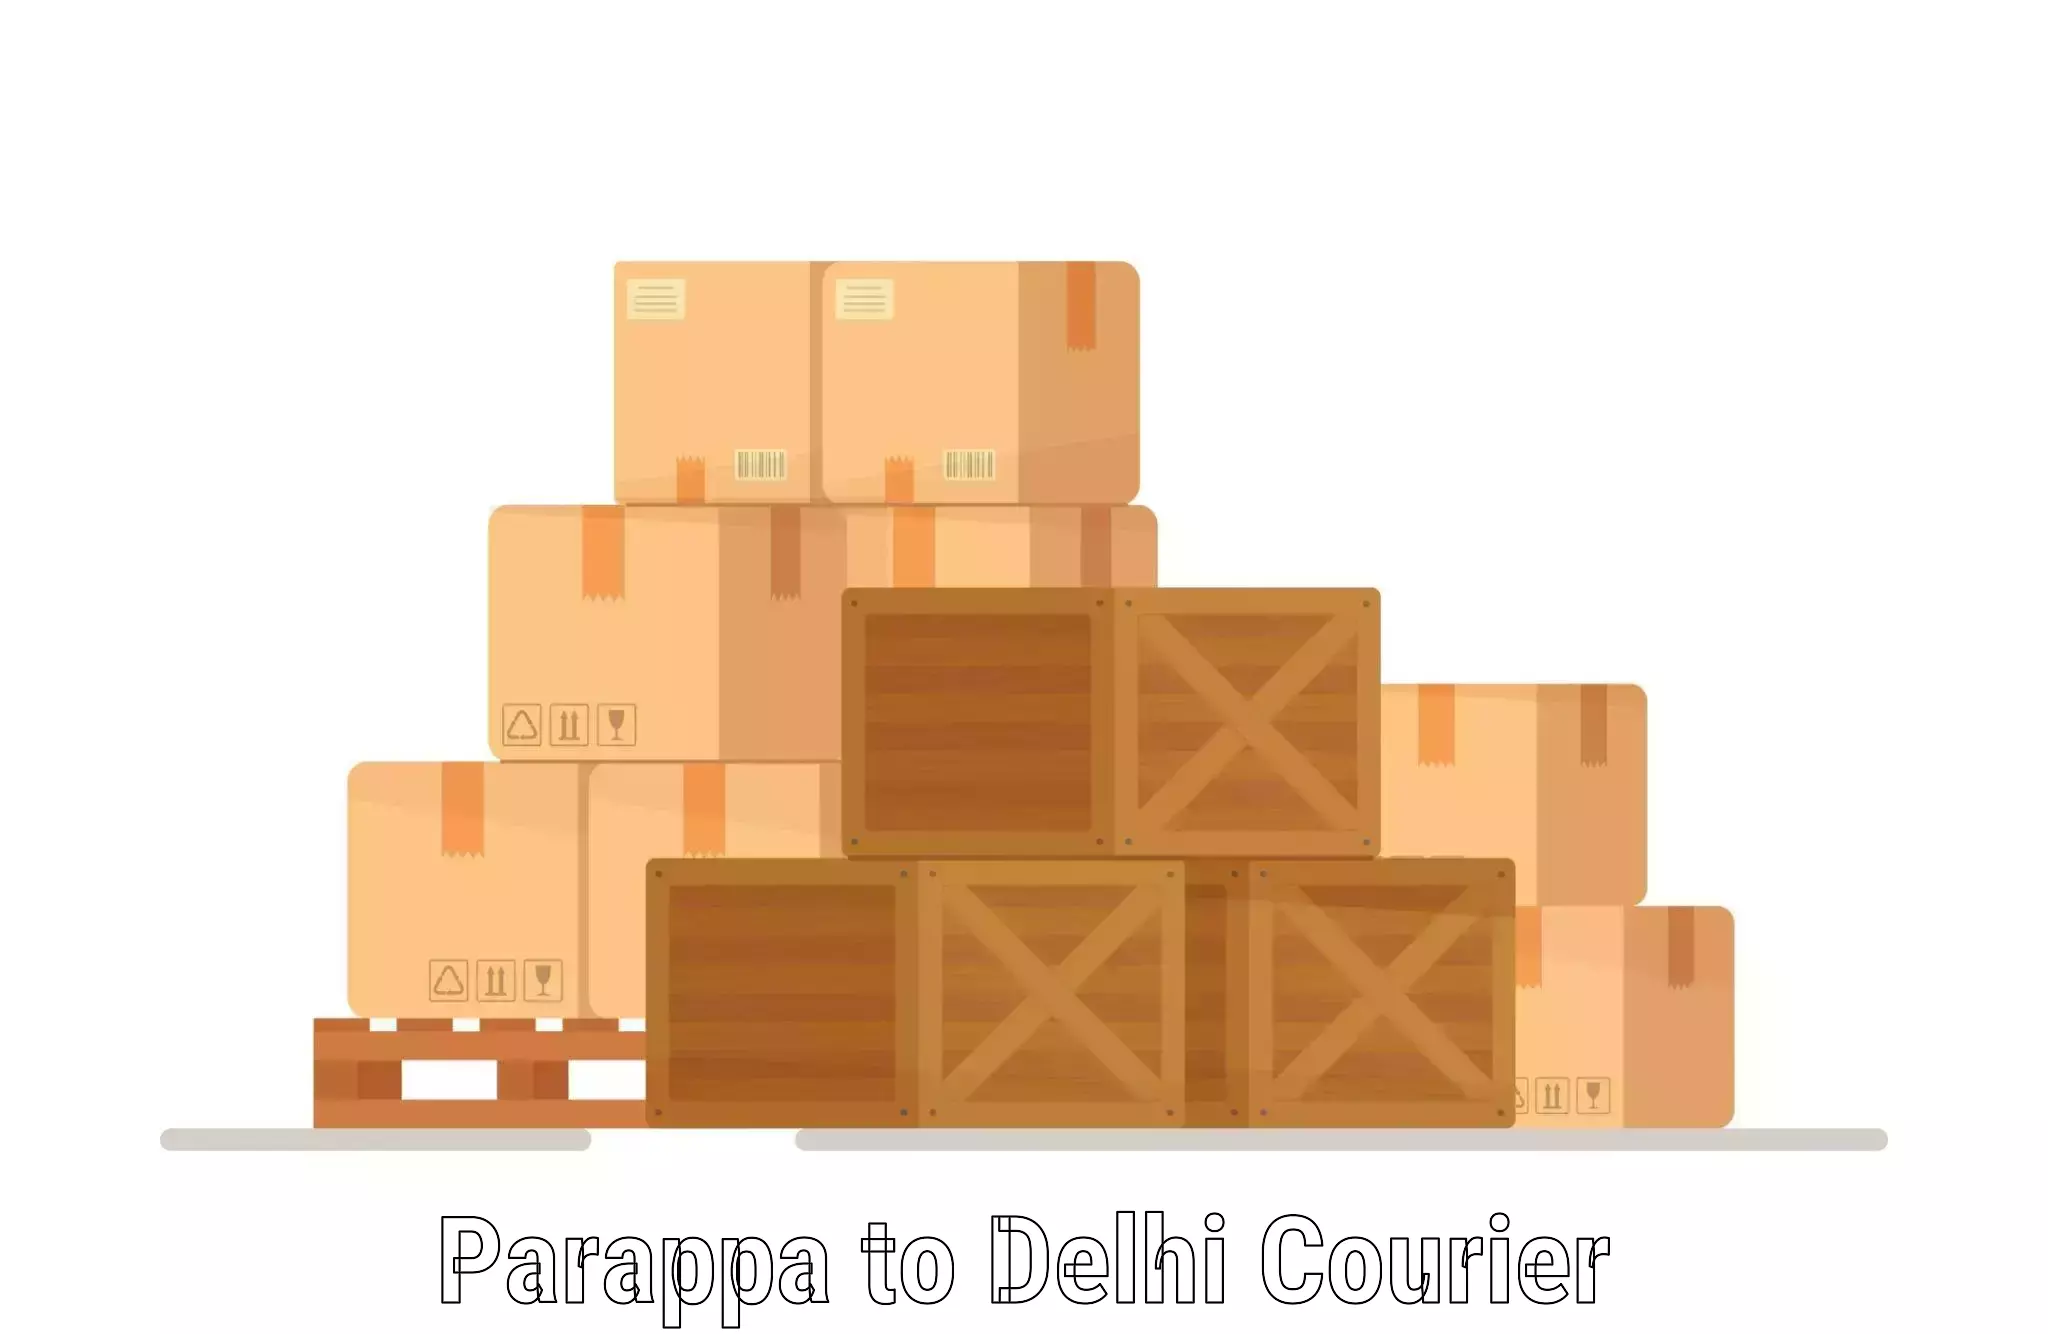 Regular parcel service Parappa to Sarojini Nagar